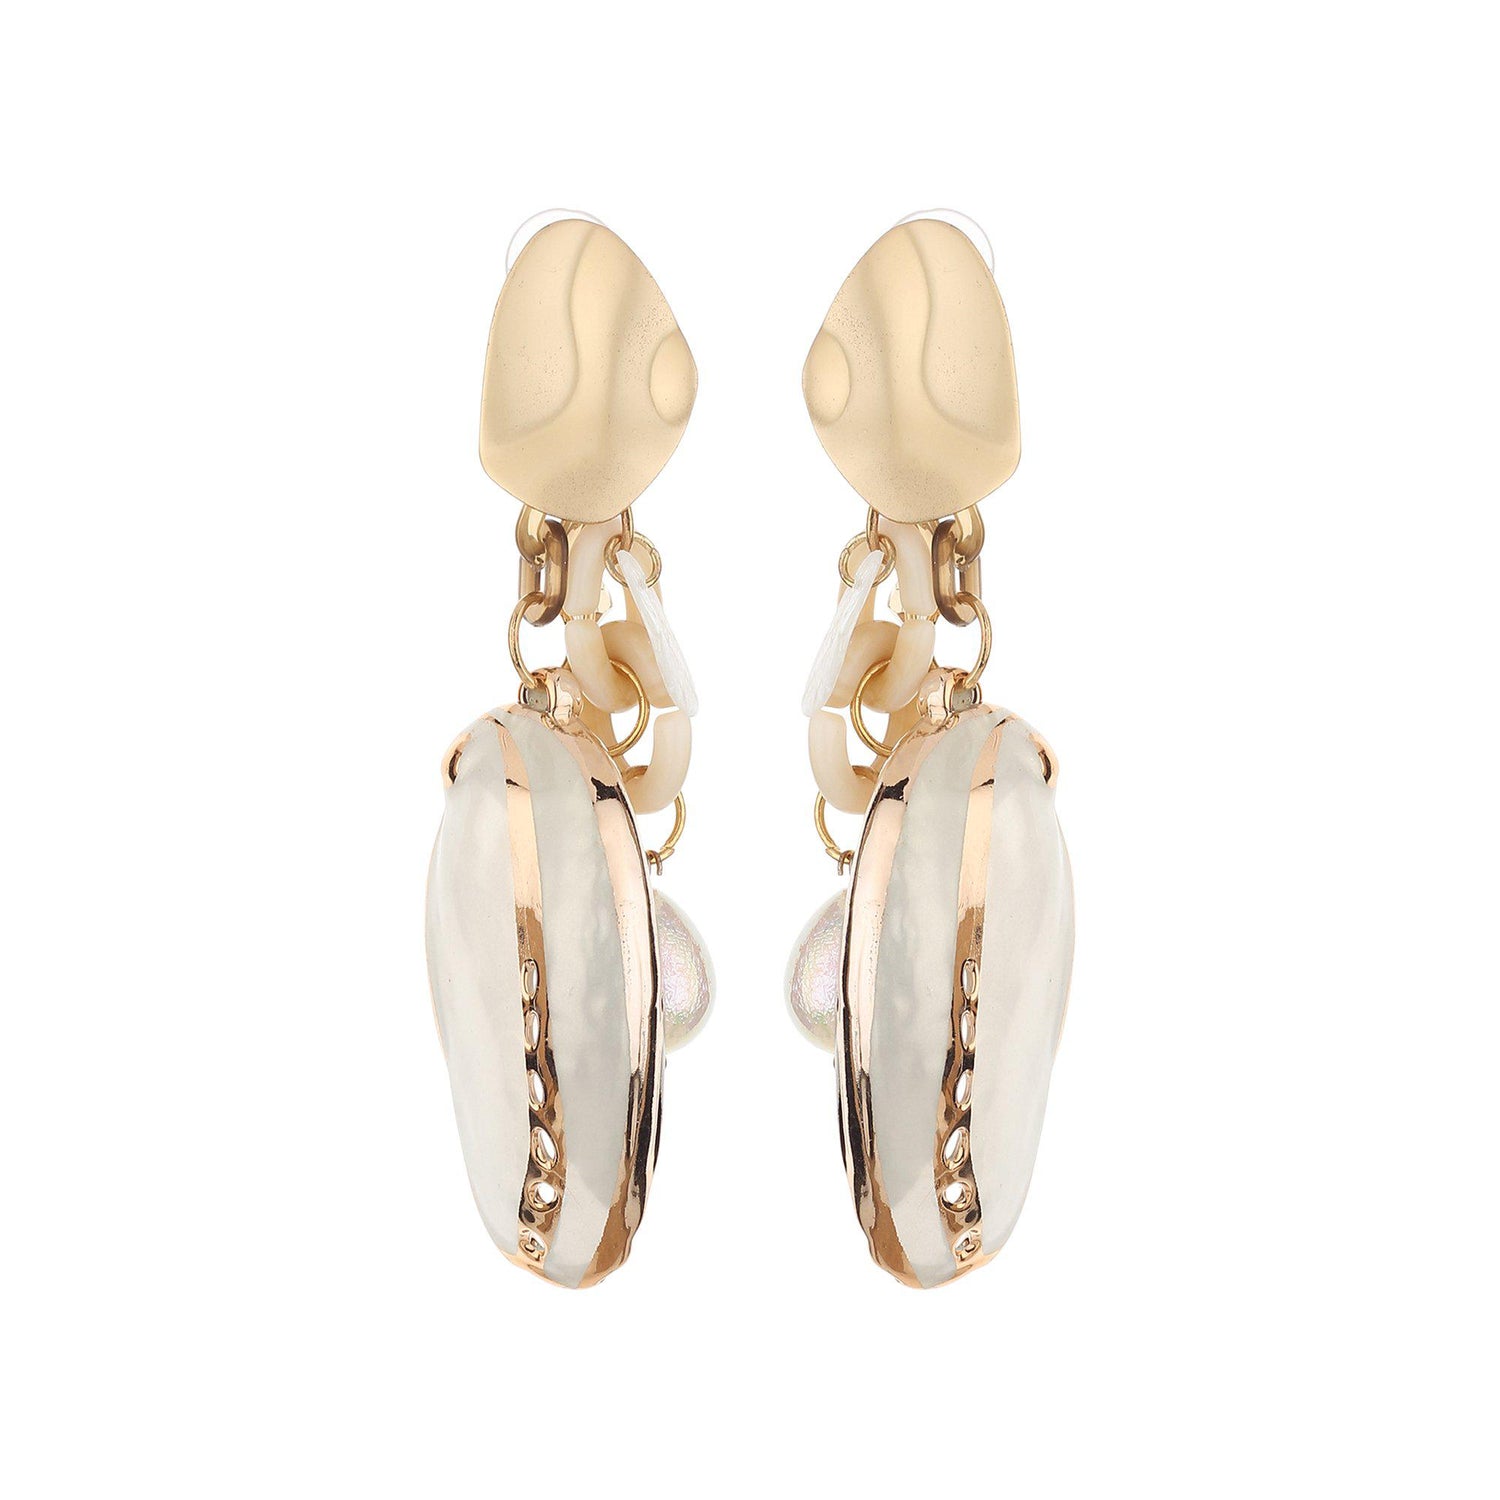 Crystal Pearl & Metal Dangler Earrings-Earrings-ONESKYSHOP